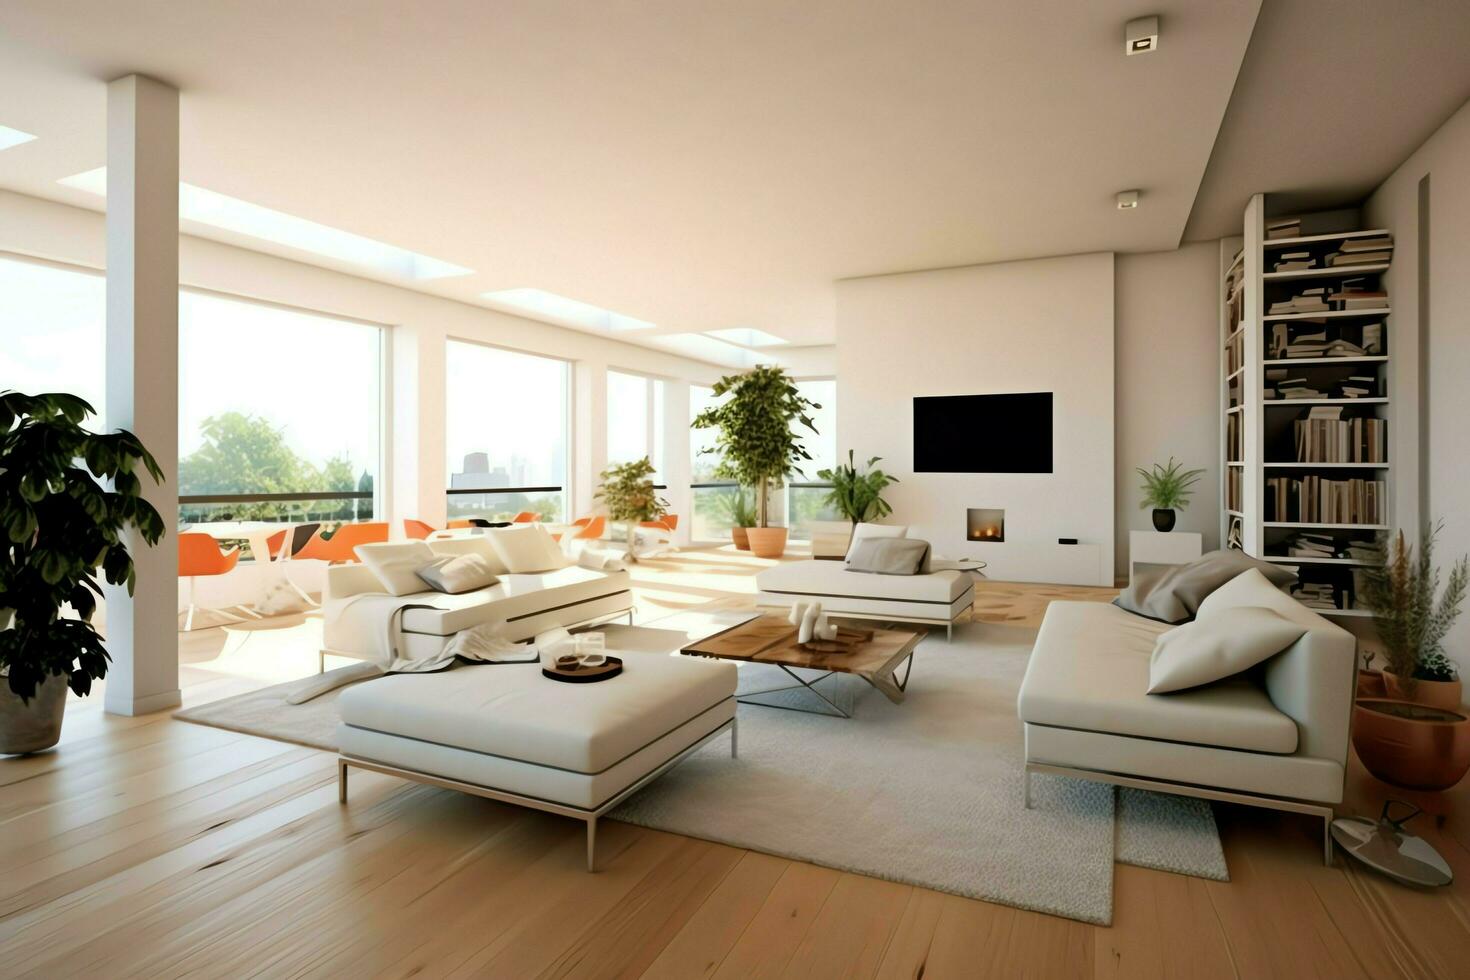 modern lägenhet interiör i levande design med arbetssätt tabell och bokhylla. lyx Hem scandinavian begrepp förbi ai genererad foto